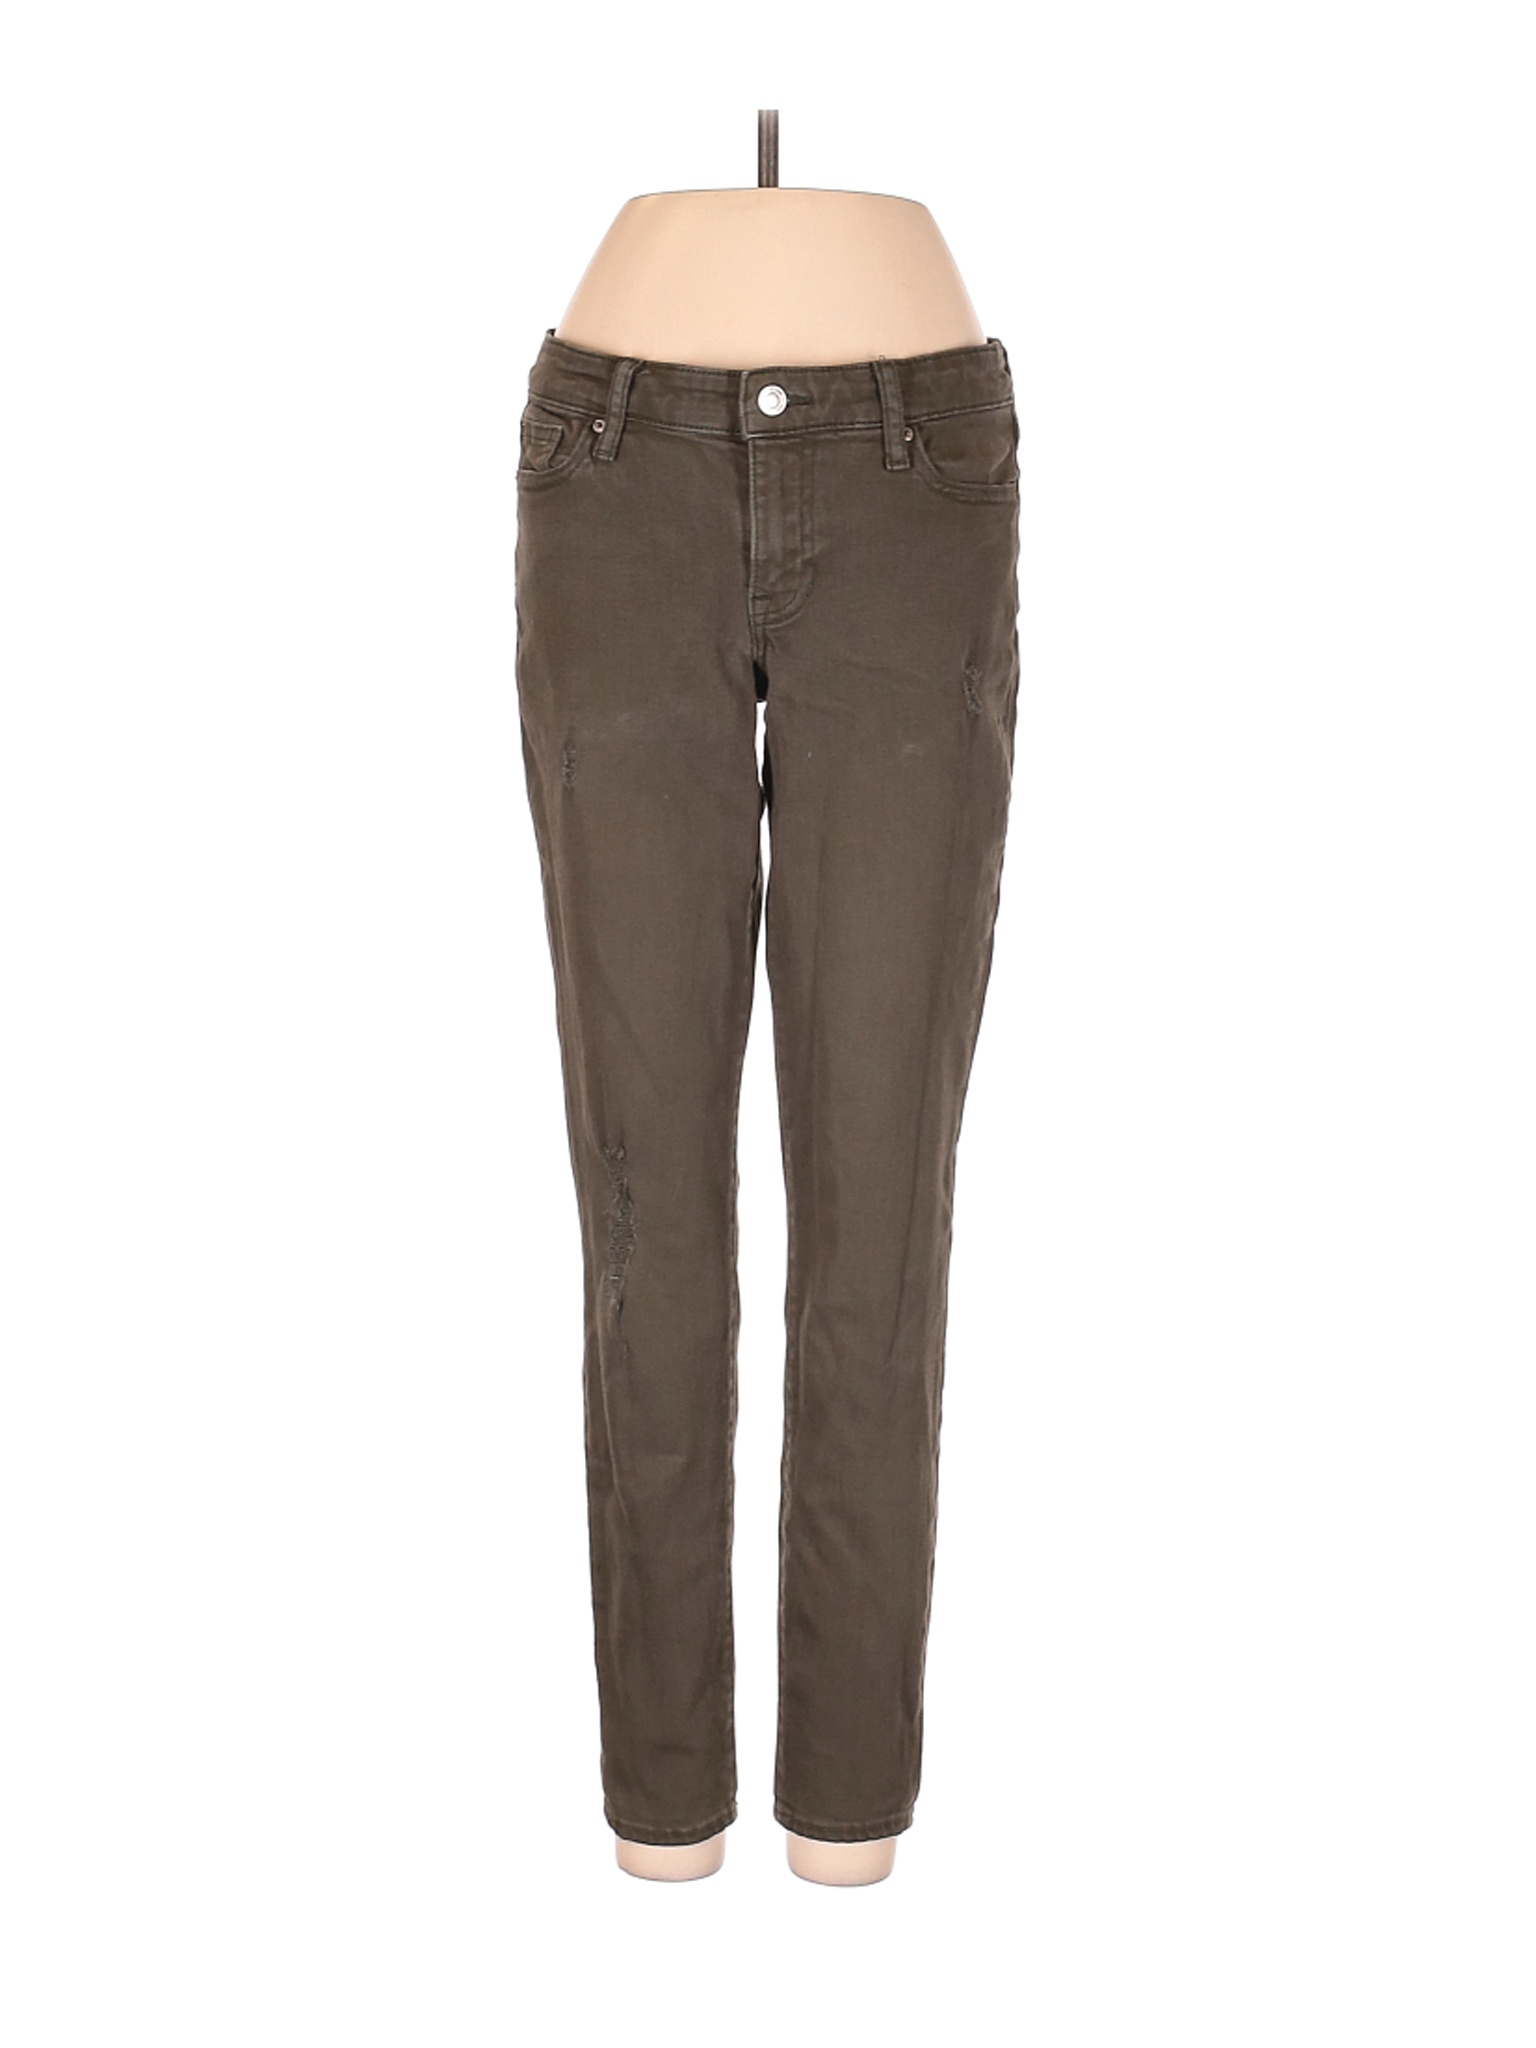 Gap Outlet Women Brown Jeans 25W | eBay